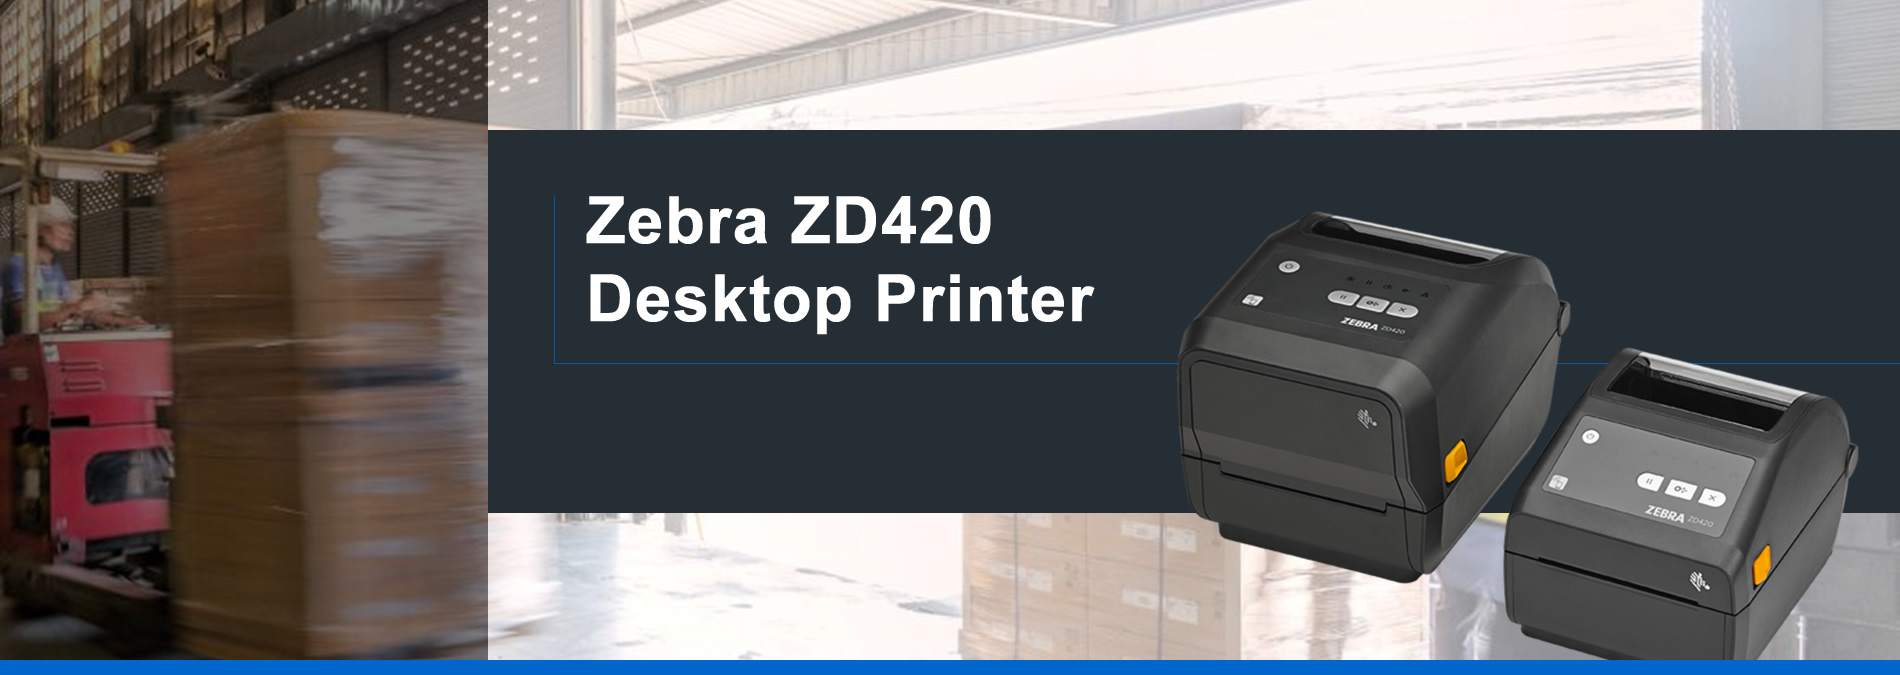 Stampante Desktop Zebra ZD420: flessibile, funzionale, semplice da usare.